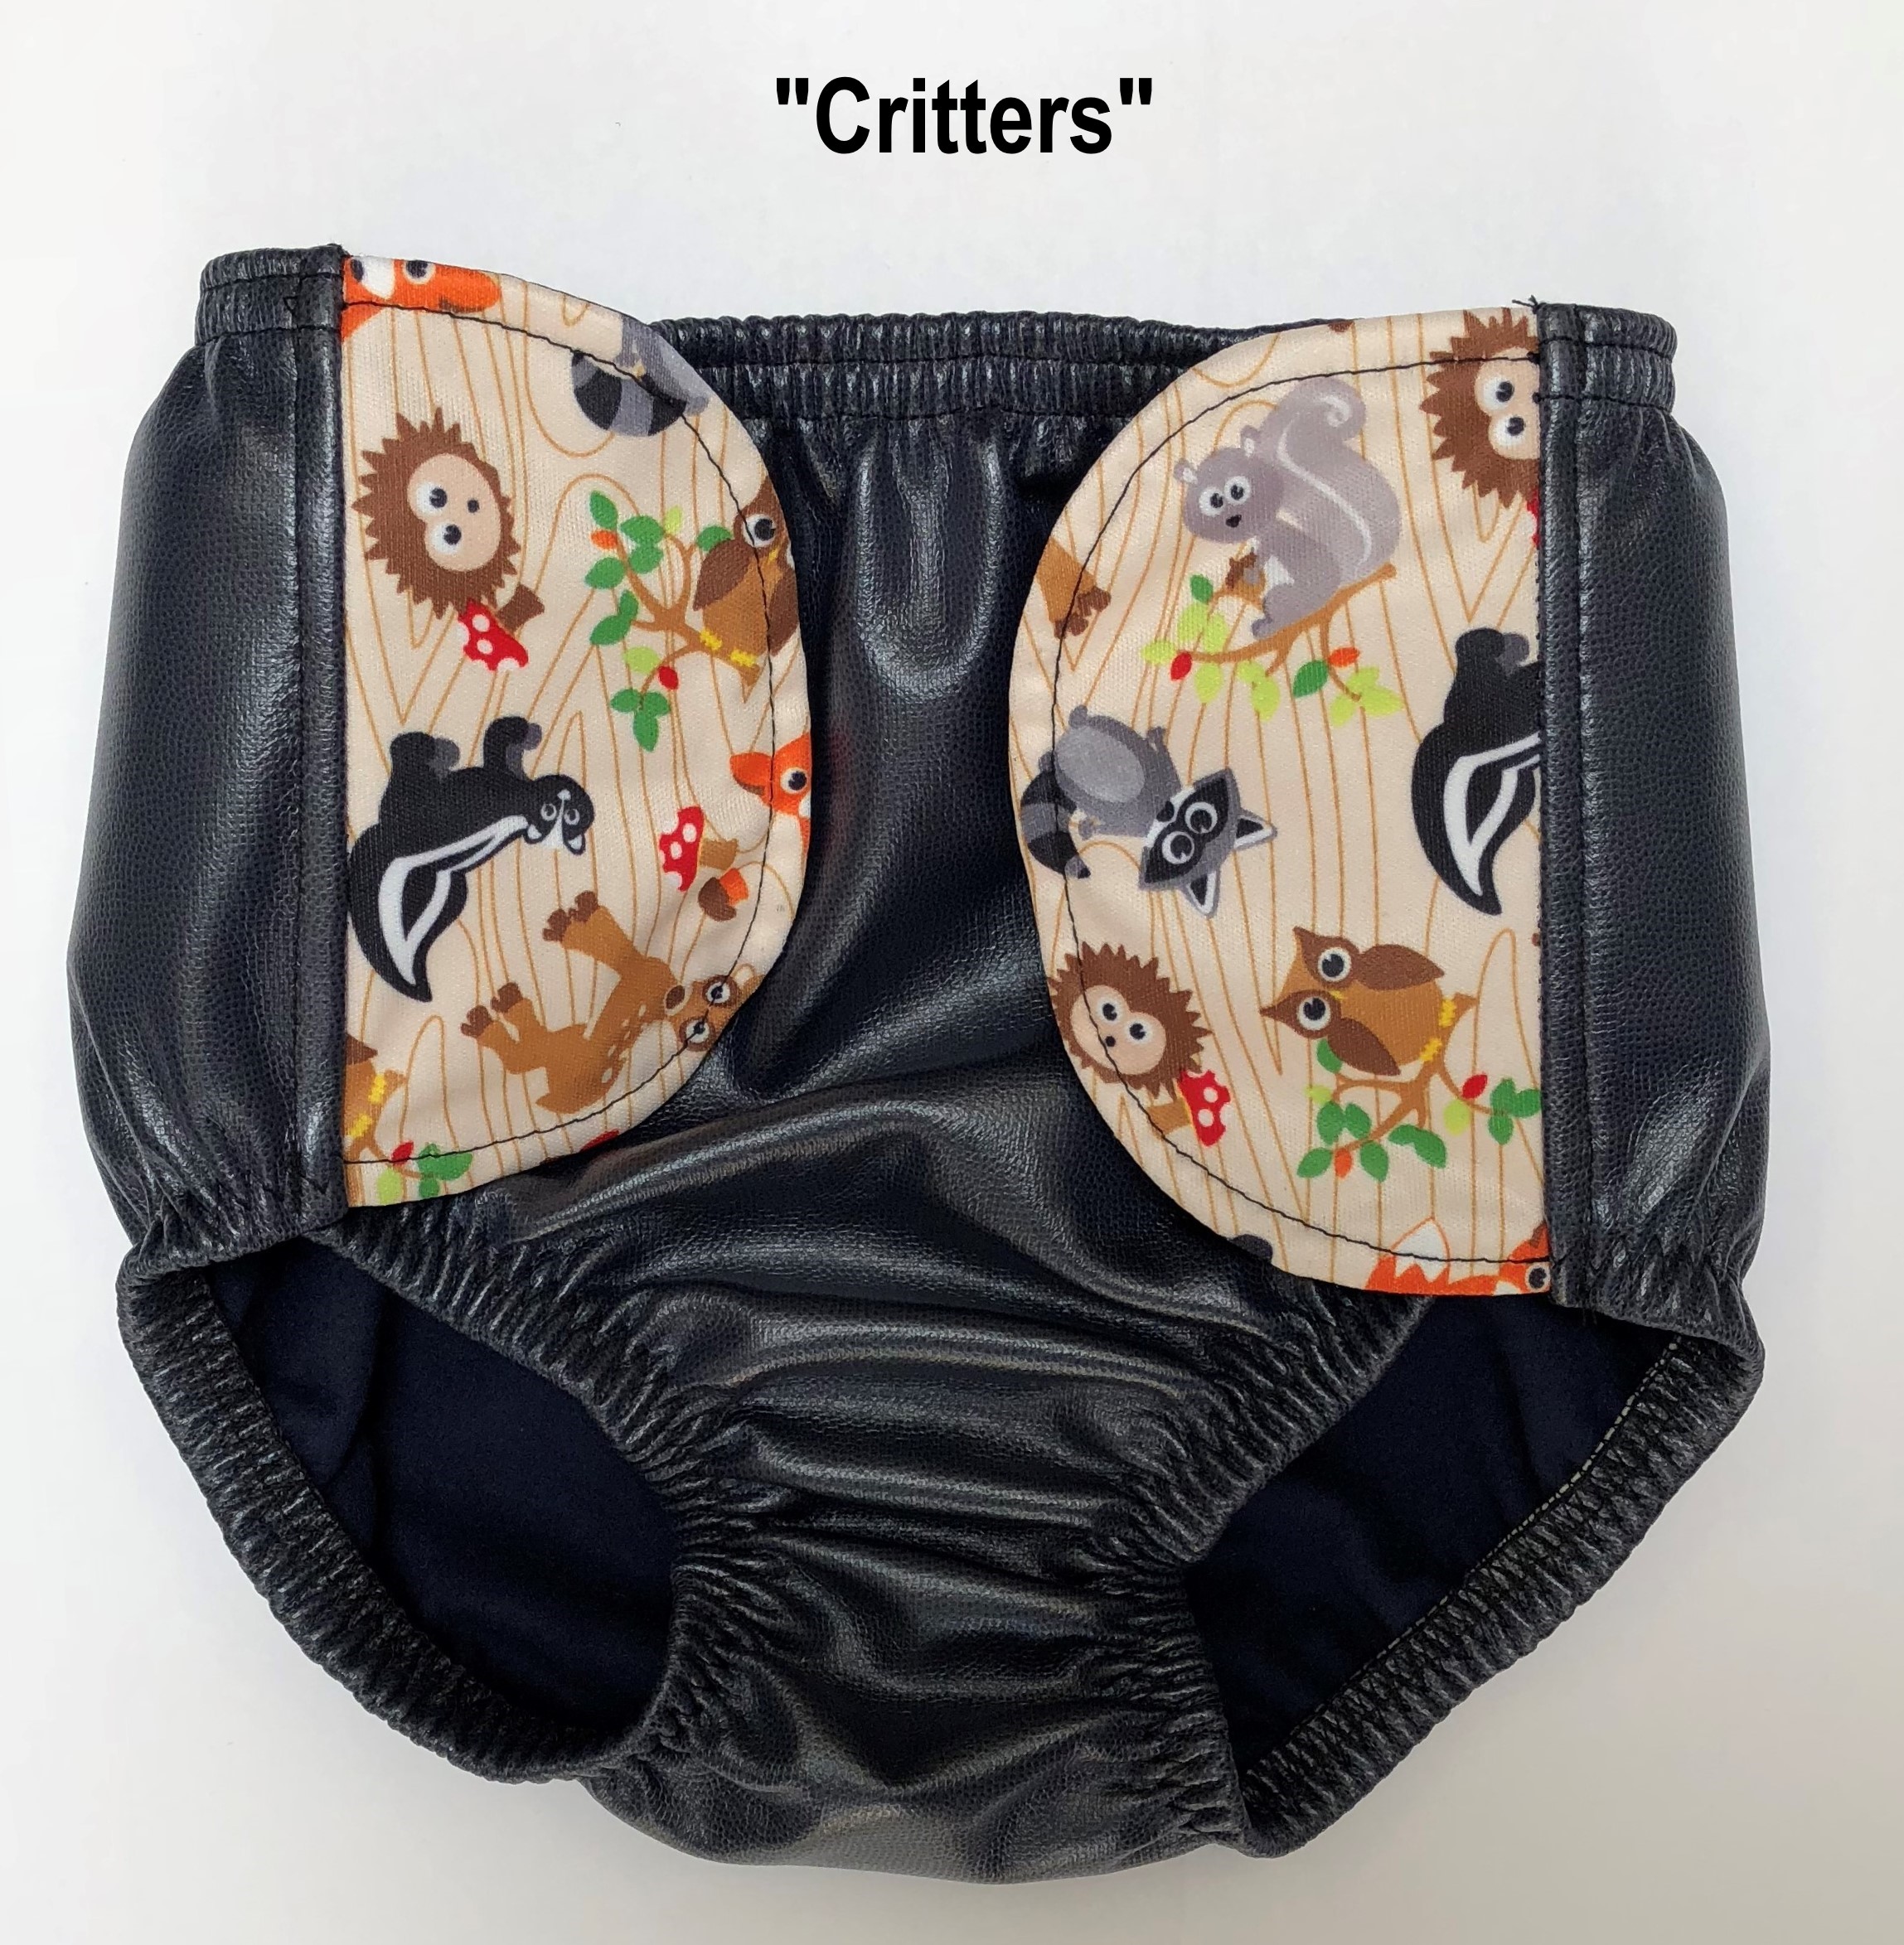 Kleding Jongenskleding Ondergoed Custom Order Swim Diaper Made to Your Measurements 